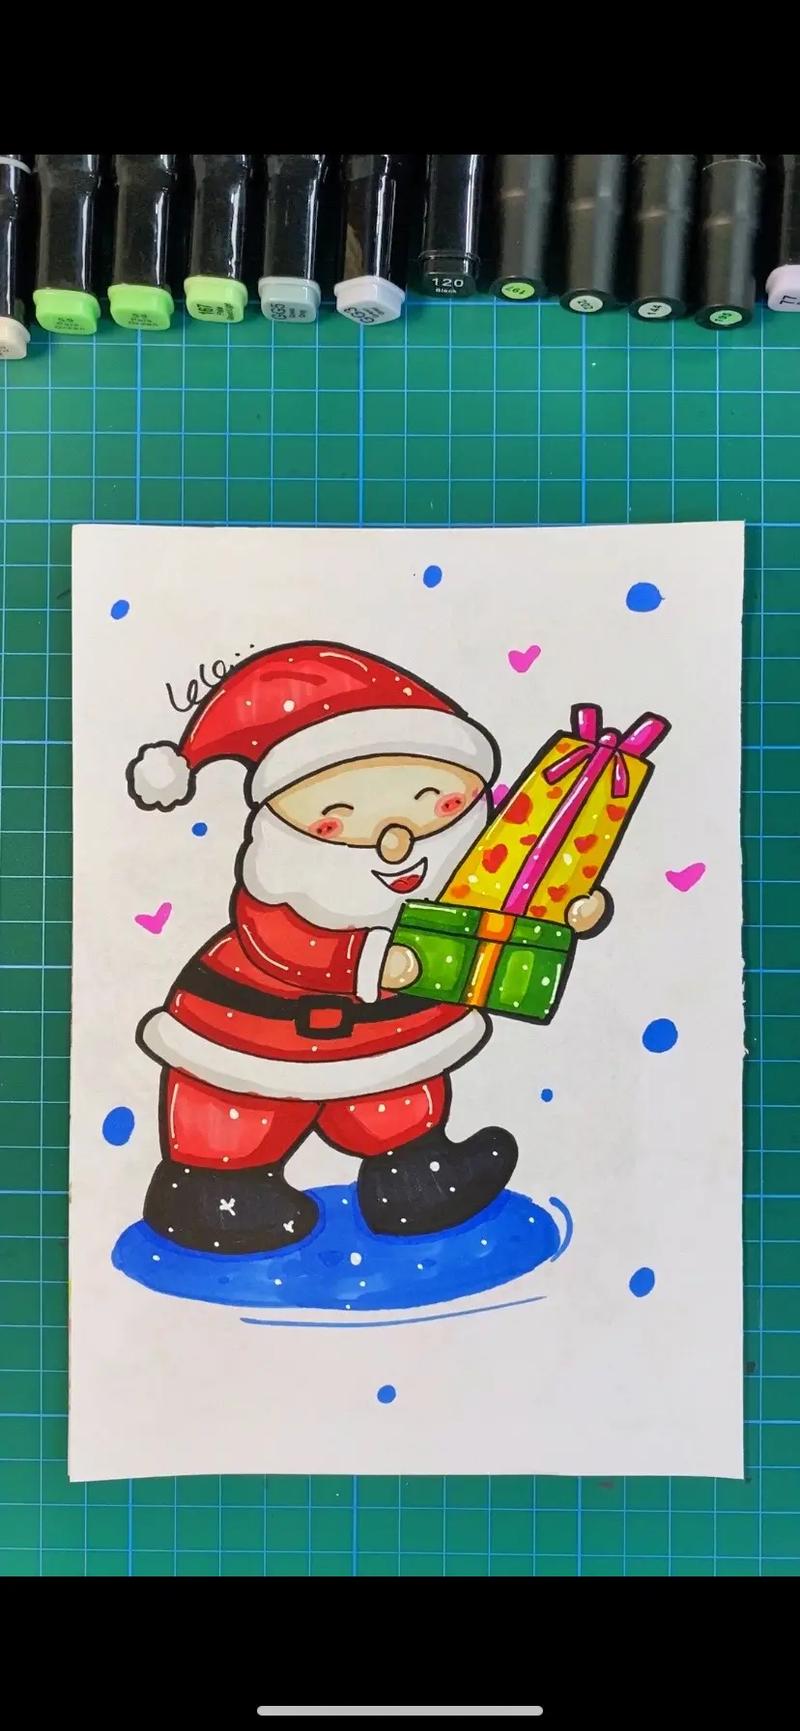 圣诞老人简笔画图片大全 幼儿园